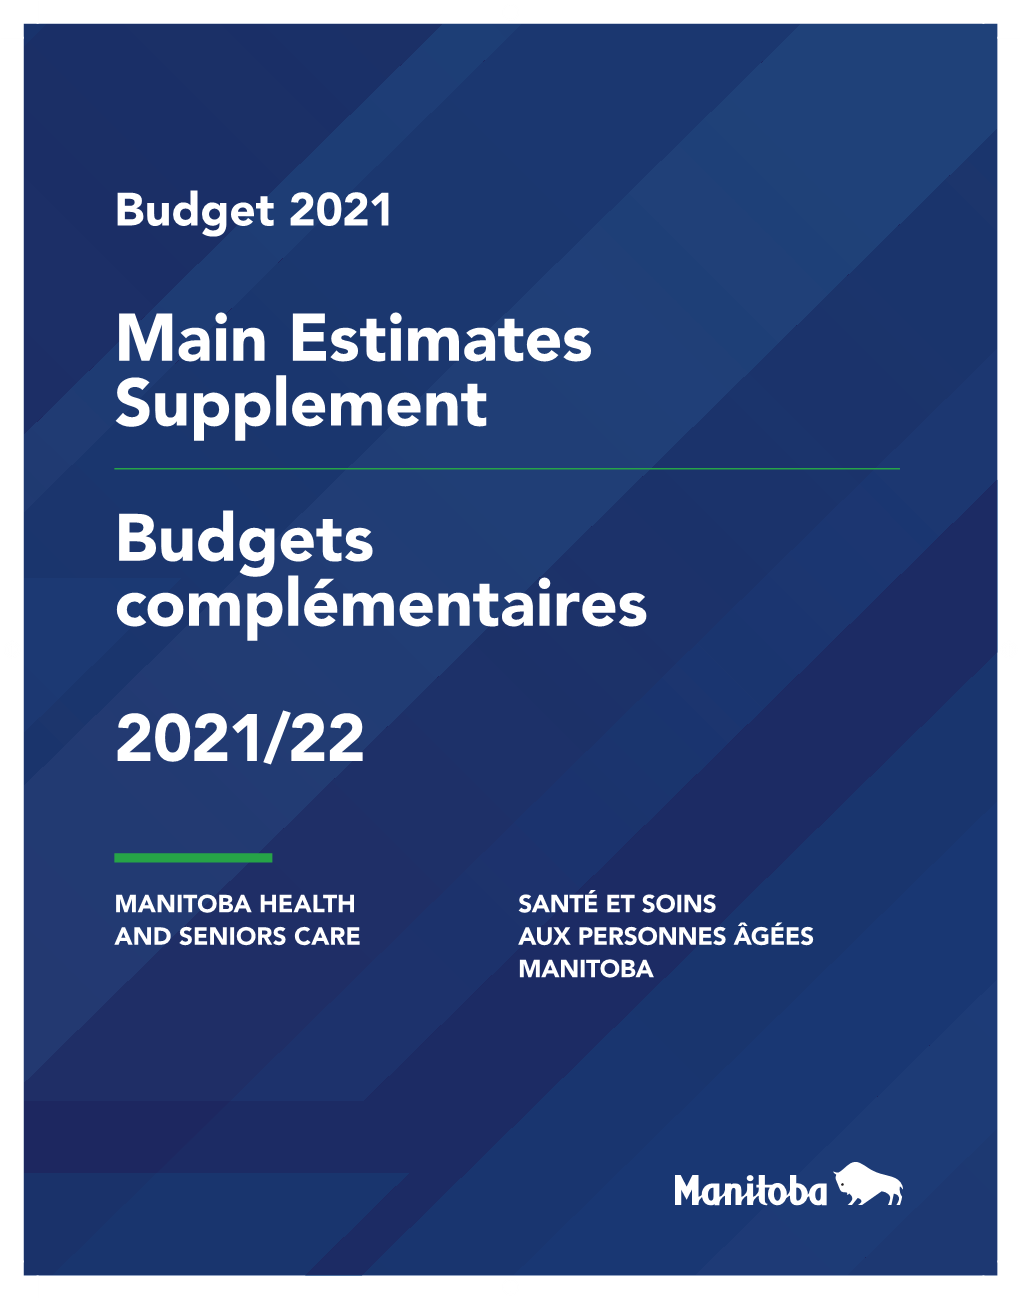 Main Estimates Supplement 2021-2022 | Manitoba Health and Seniors Care